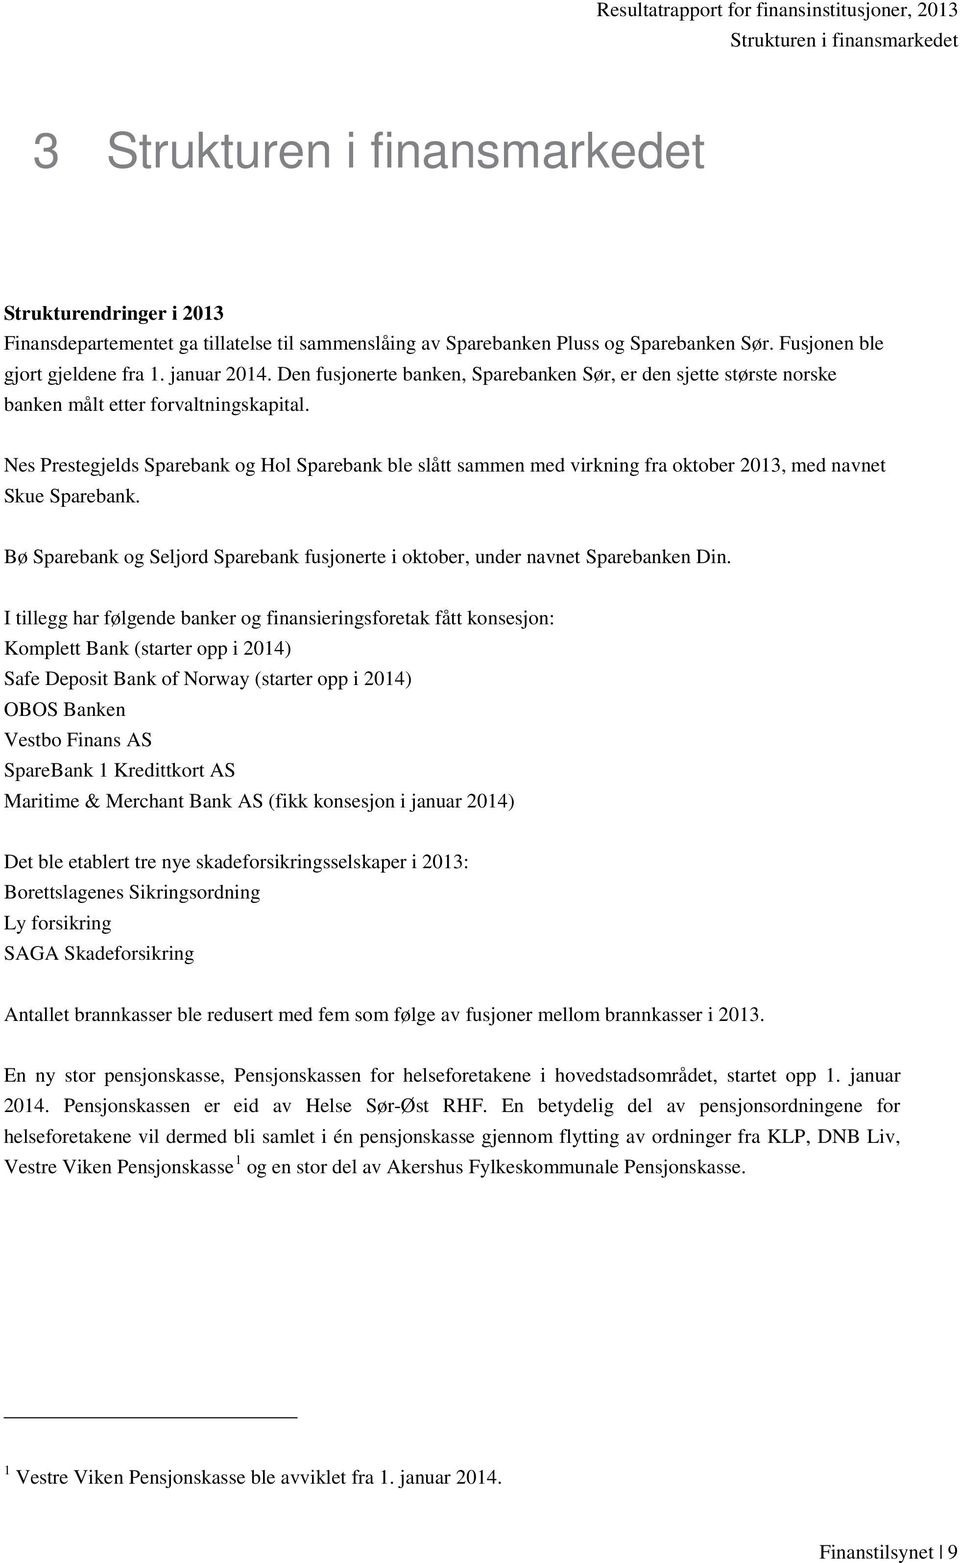 Nes Prestegjelds Sparebank og Hol Sparebank ble slått sammen med virkning fra oktober 2013, med navnet Skue Sparebank.